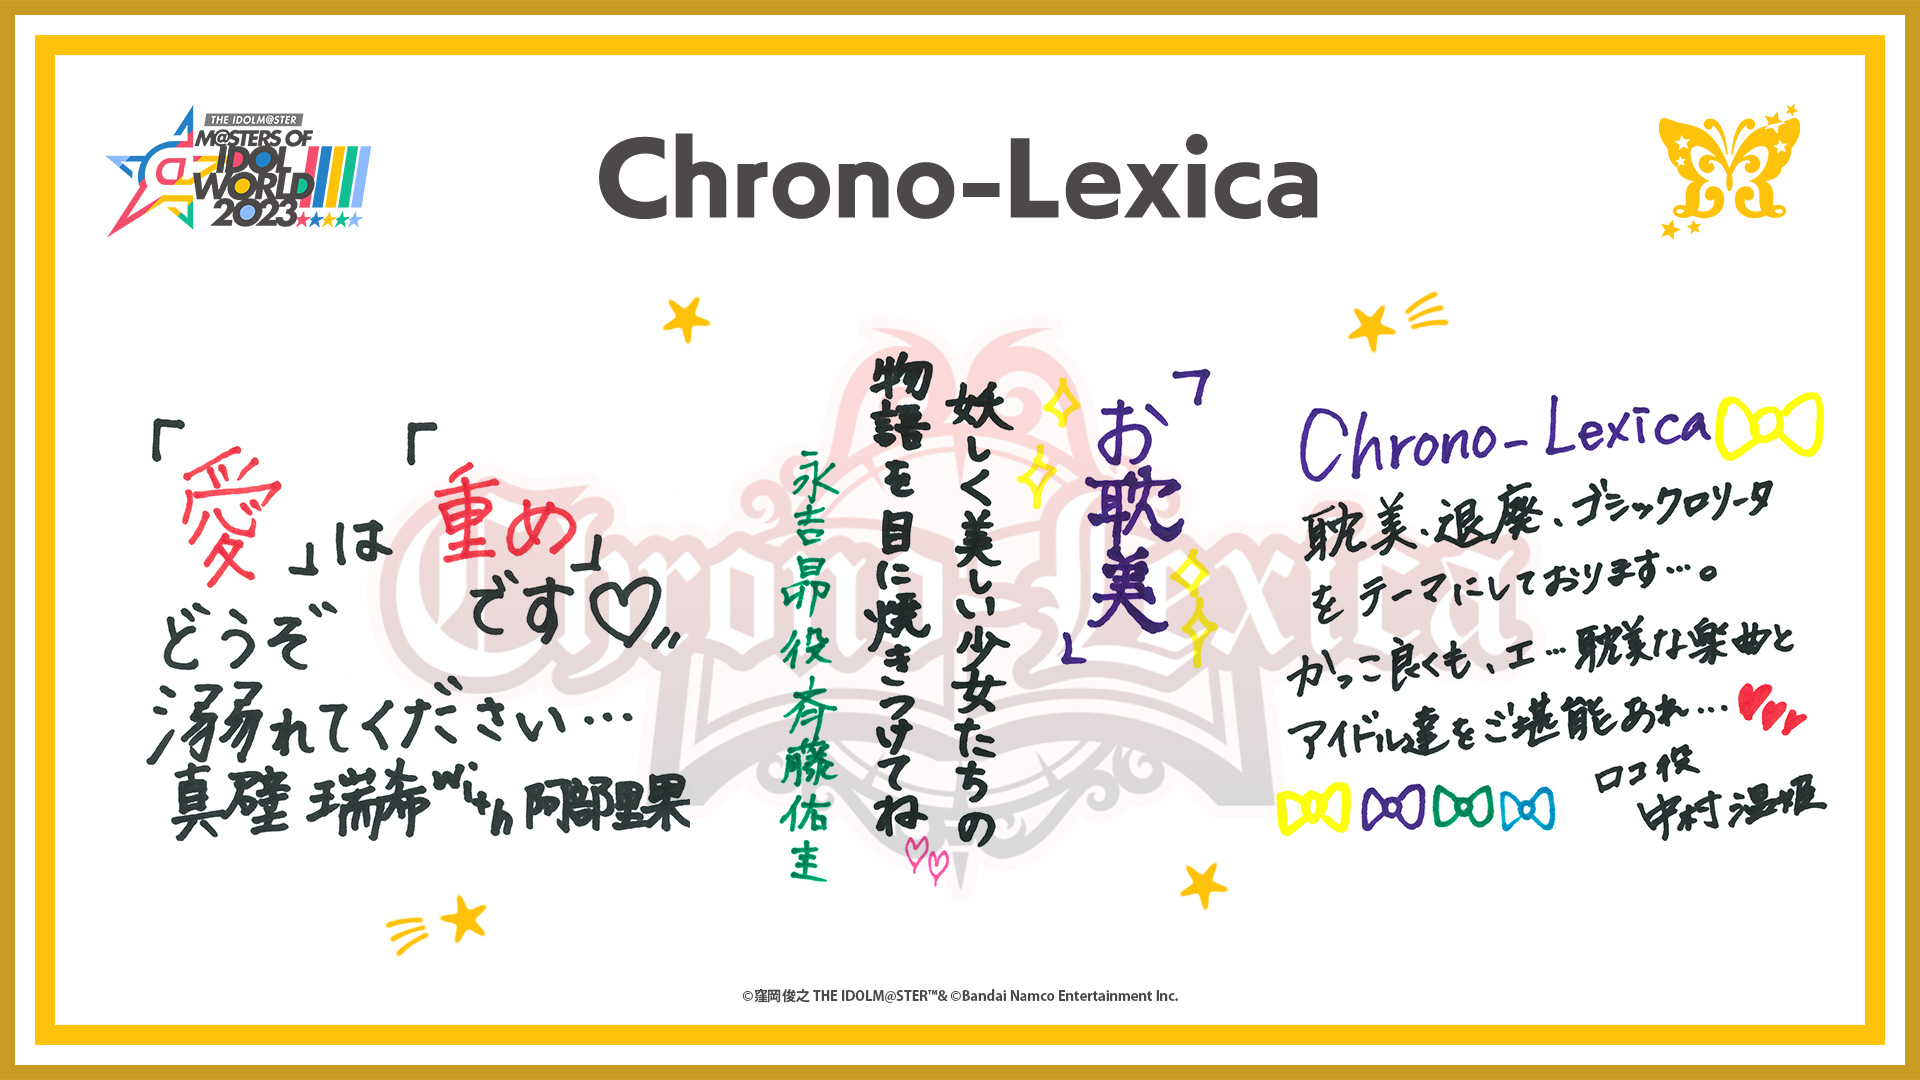 Chrono-Lexica